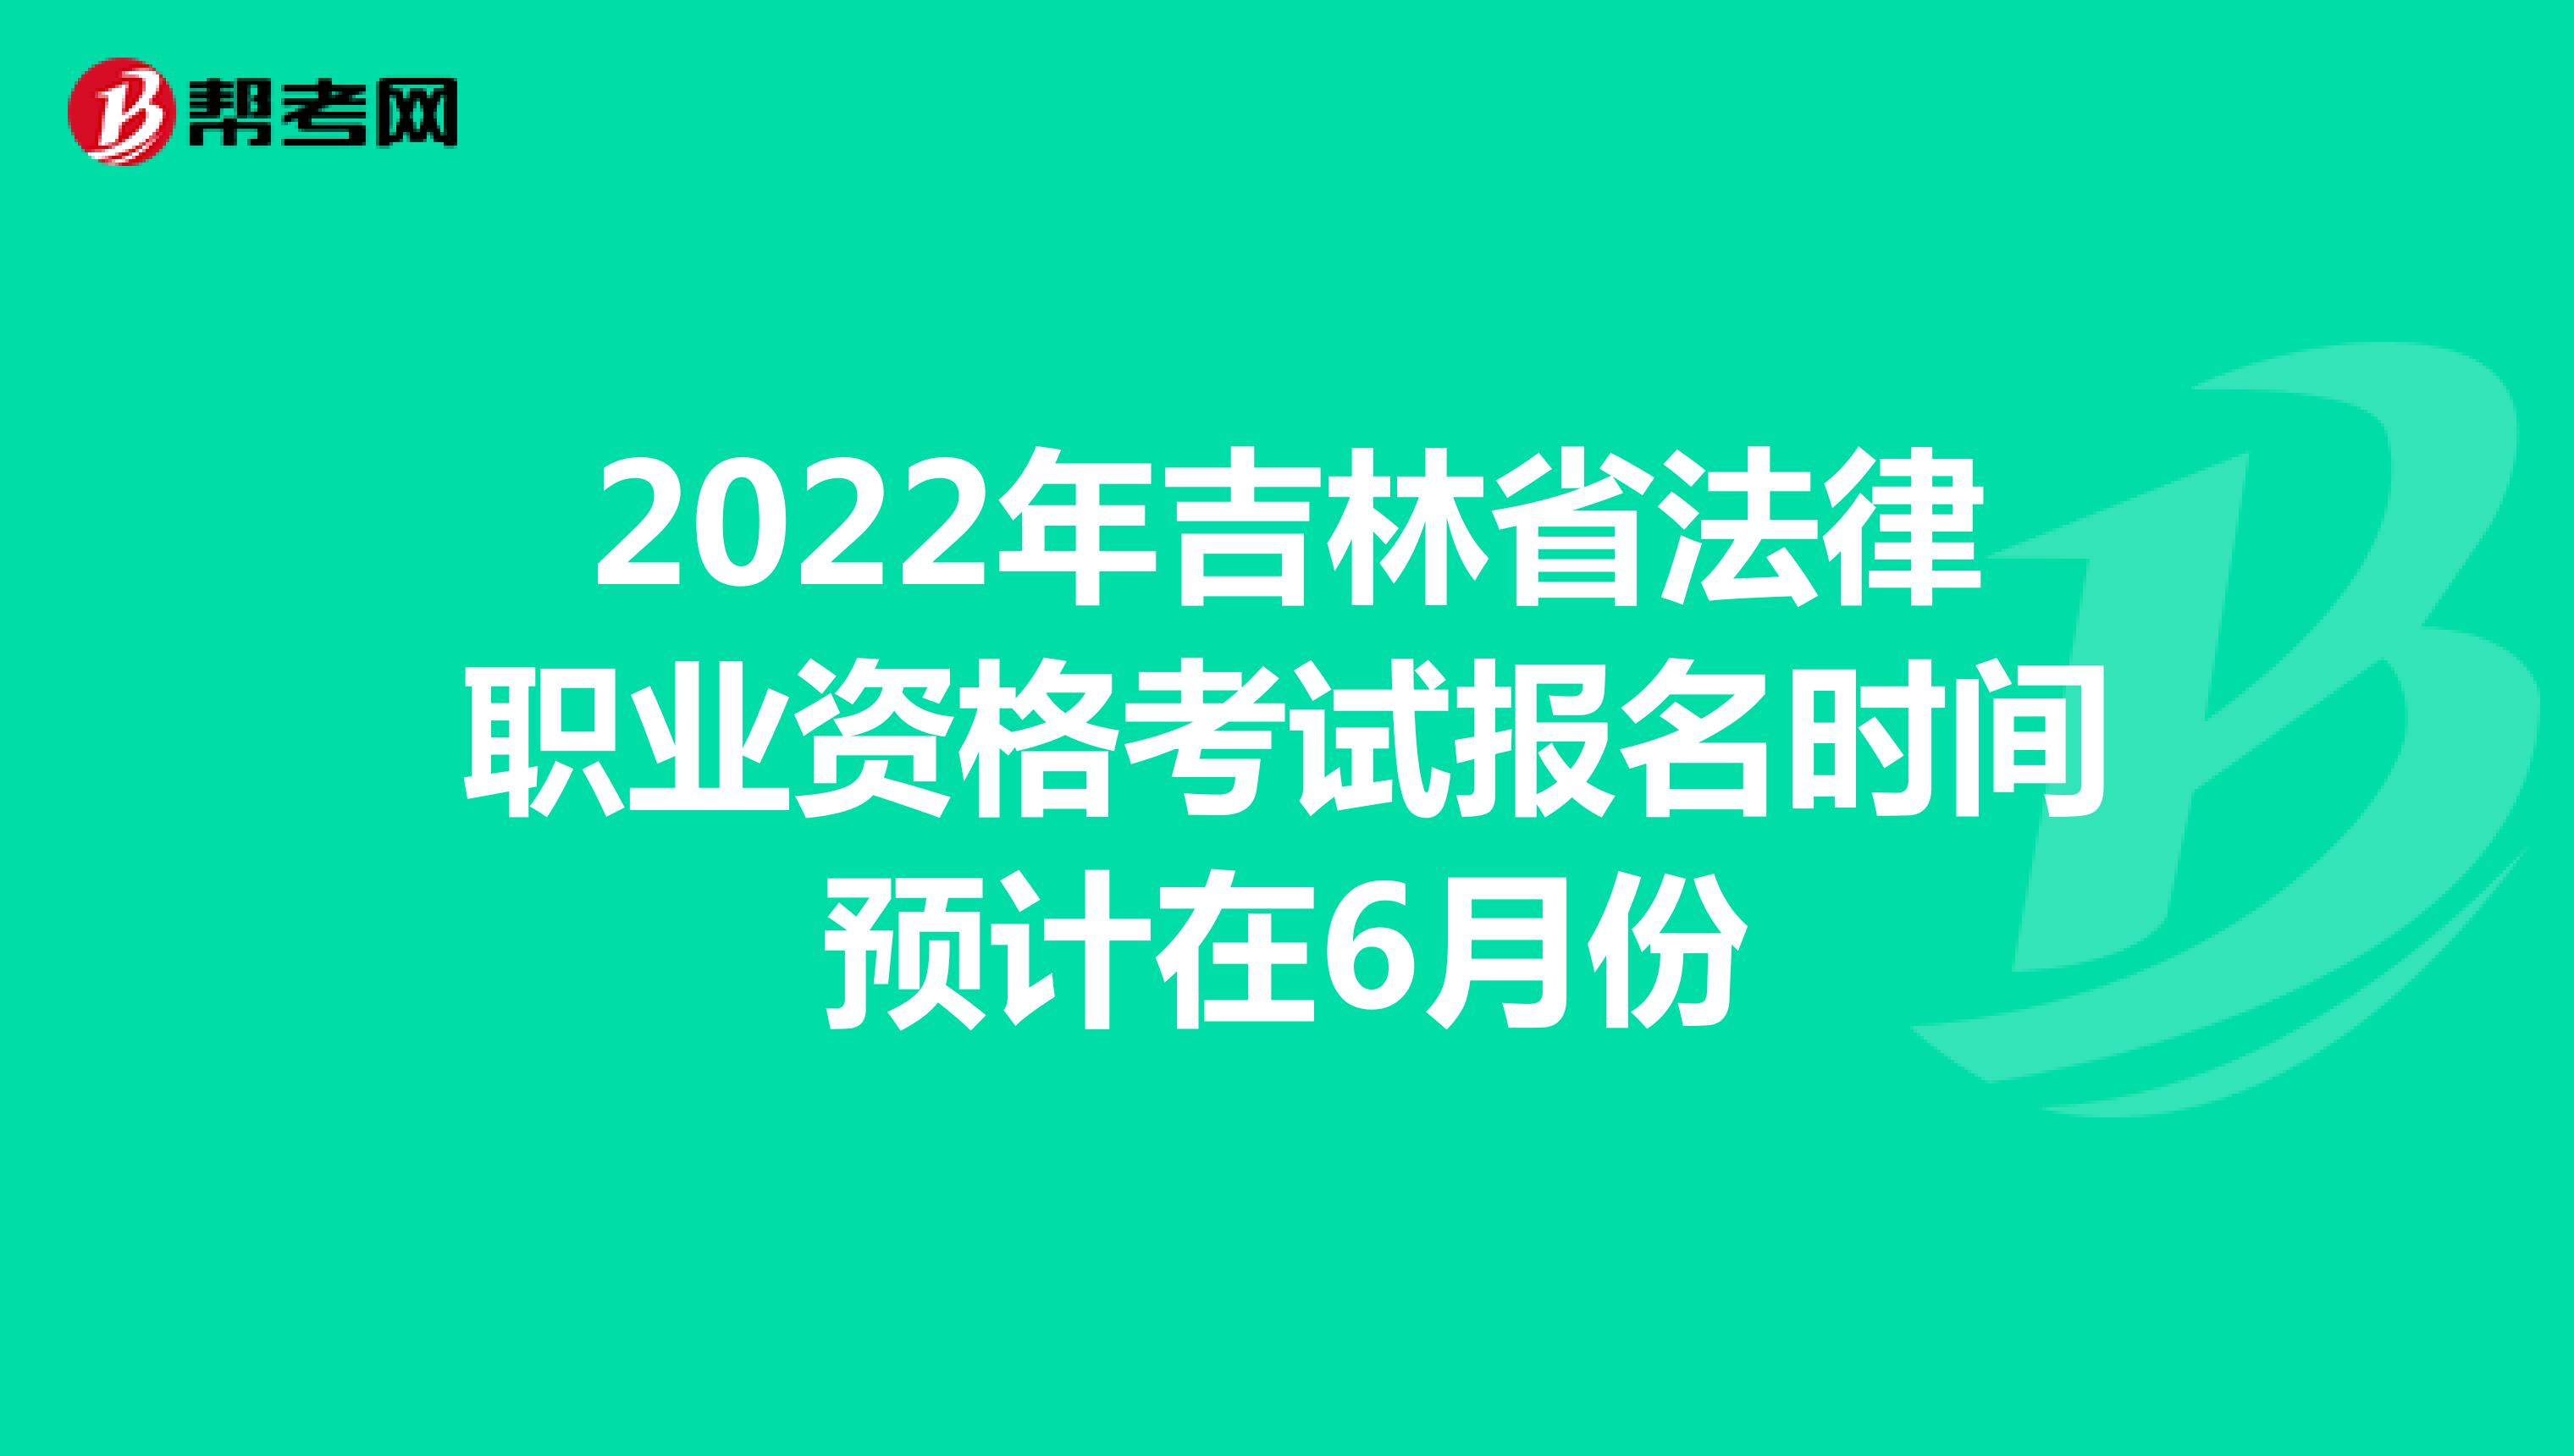 2022年吉林省法律职业资格考试报名时间预计在6月份